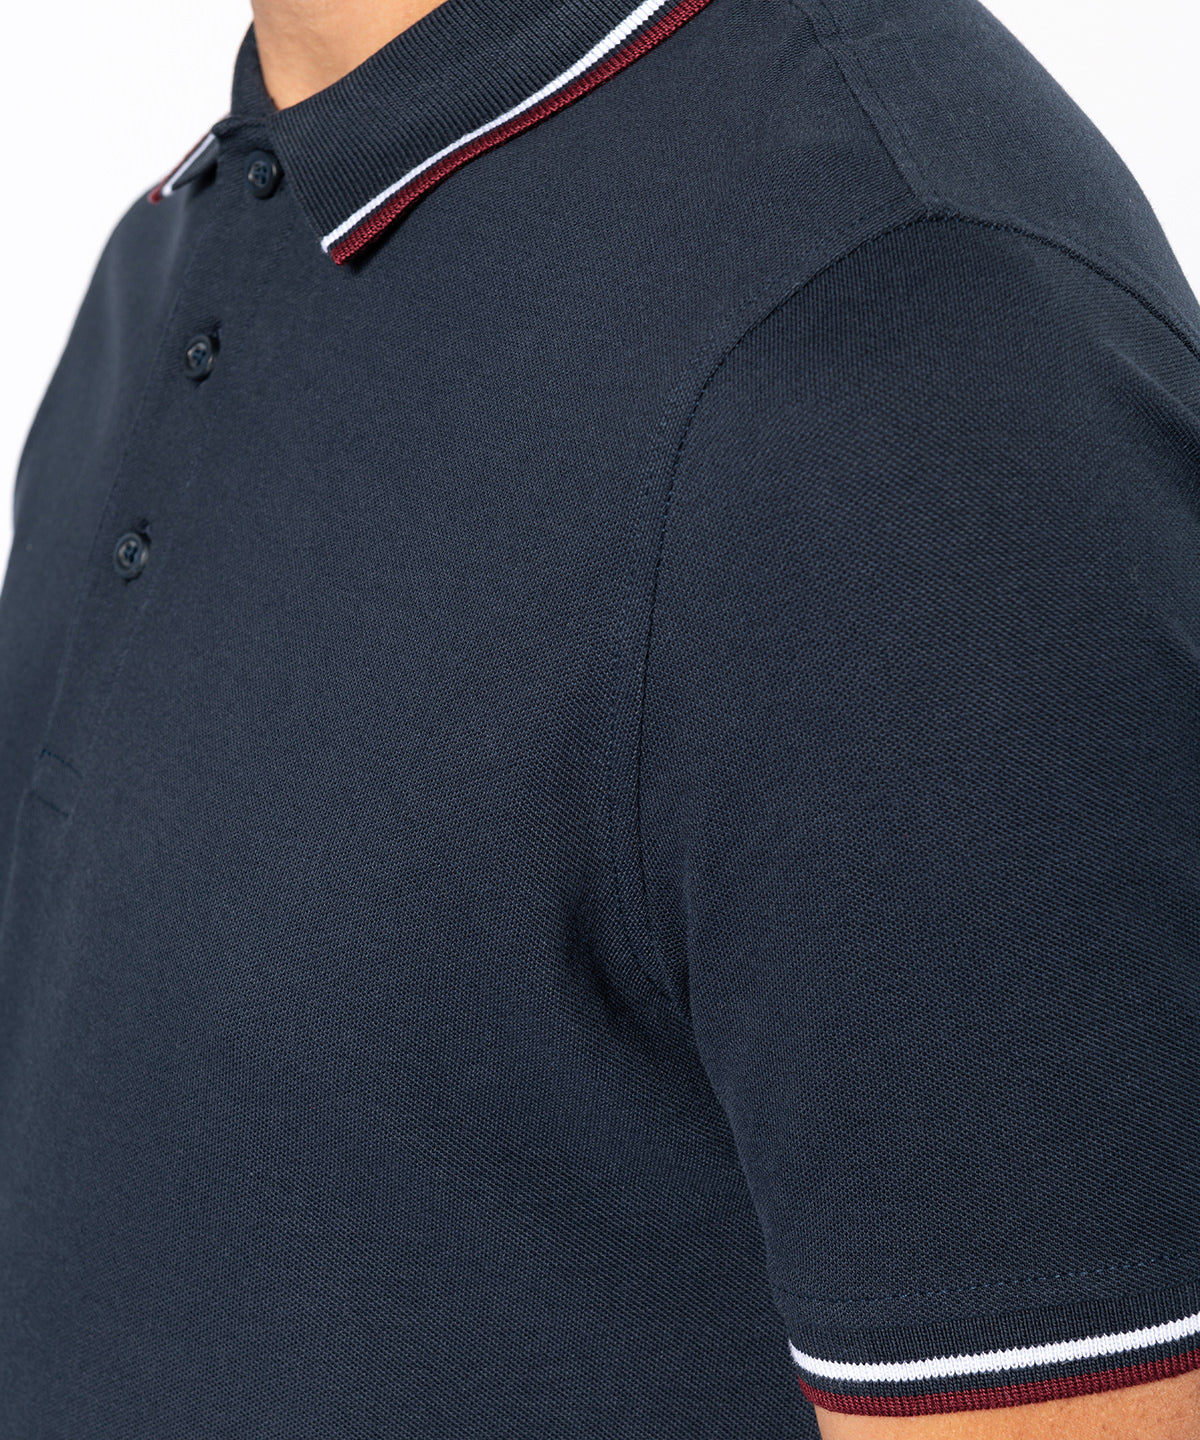 Kariban Short Sleeve Polo Shirt